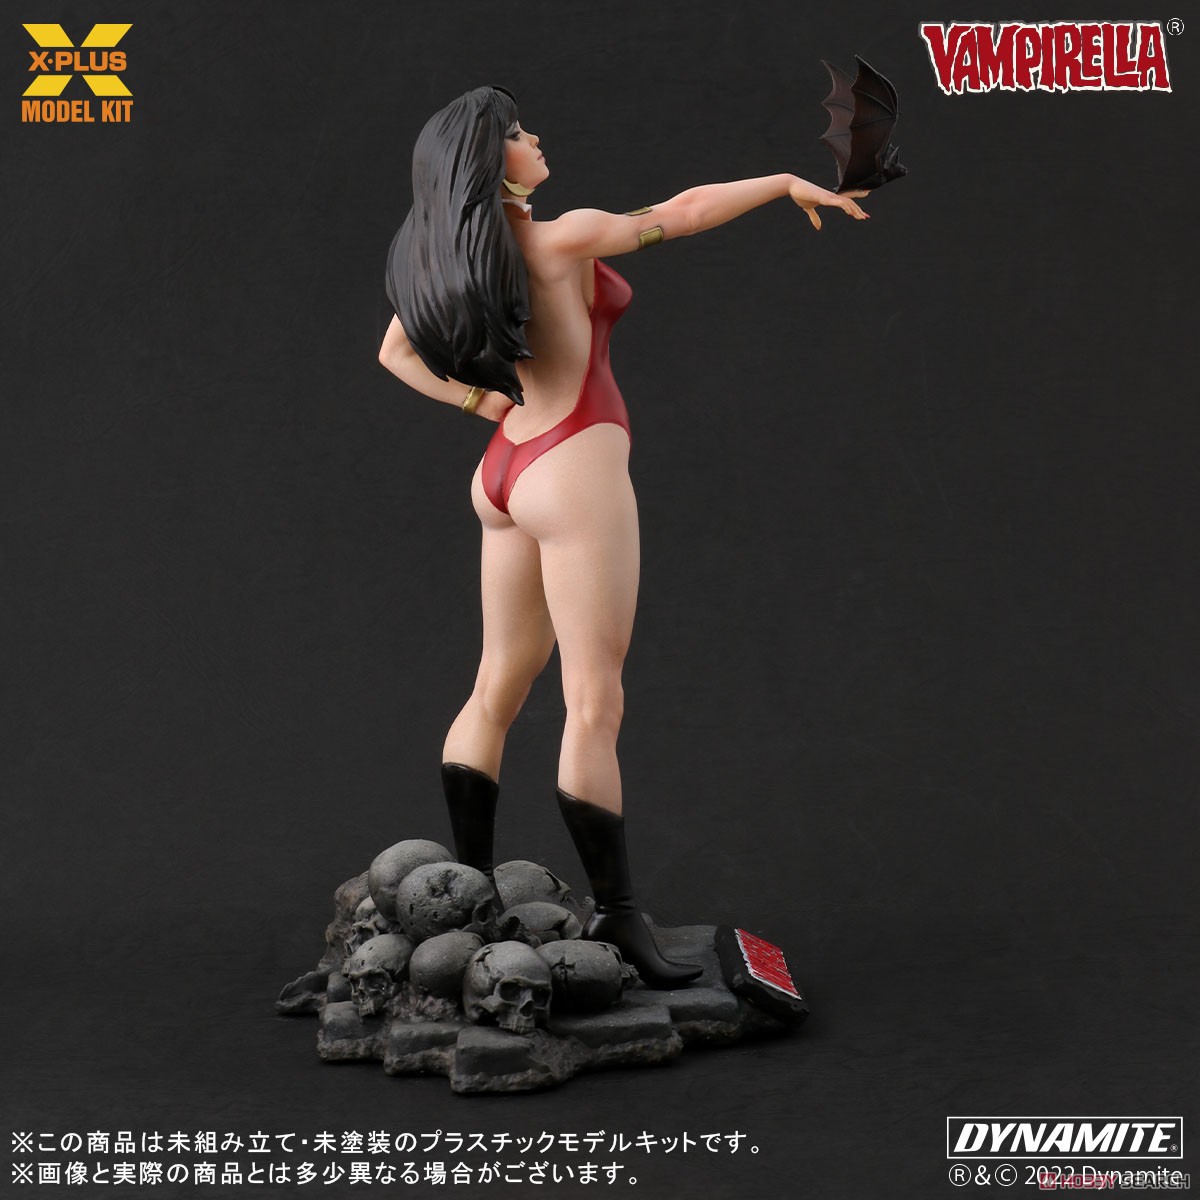 Vampirella『ヴァンピレラ ホセ・ゴンザレス エディション 』1/8スケール プラスチック モデルキット-002